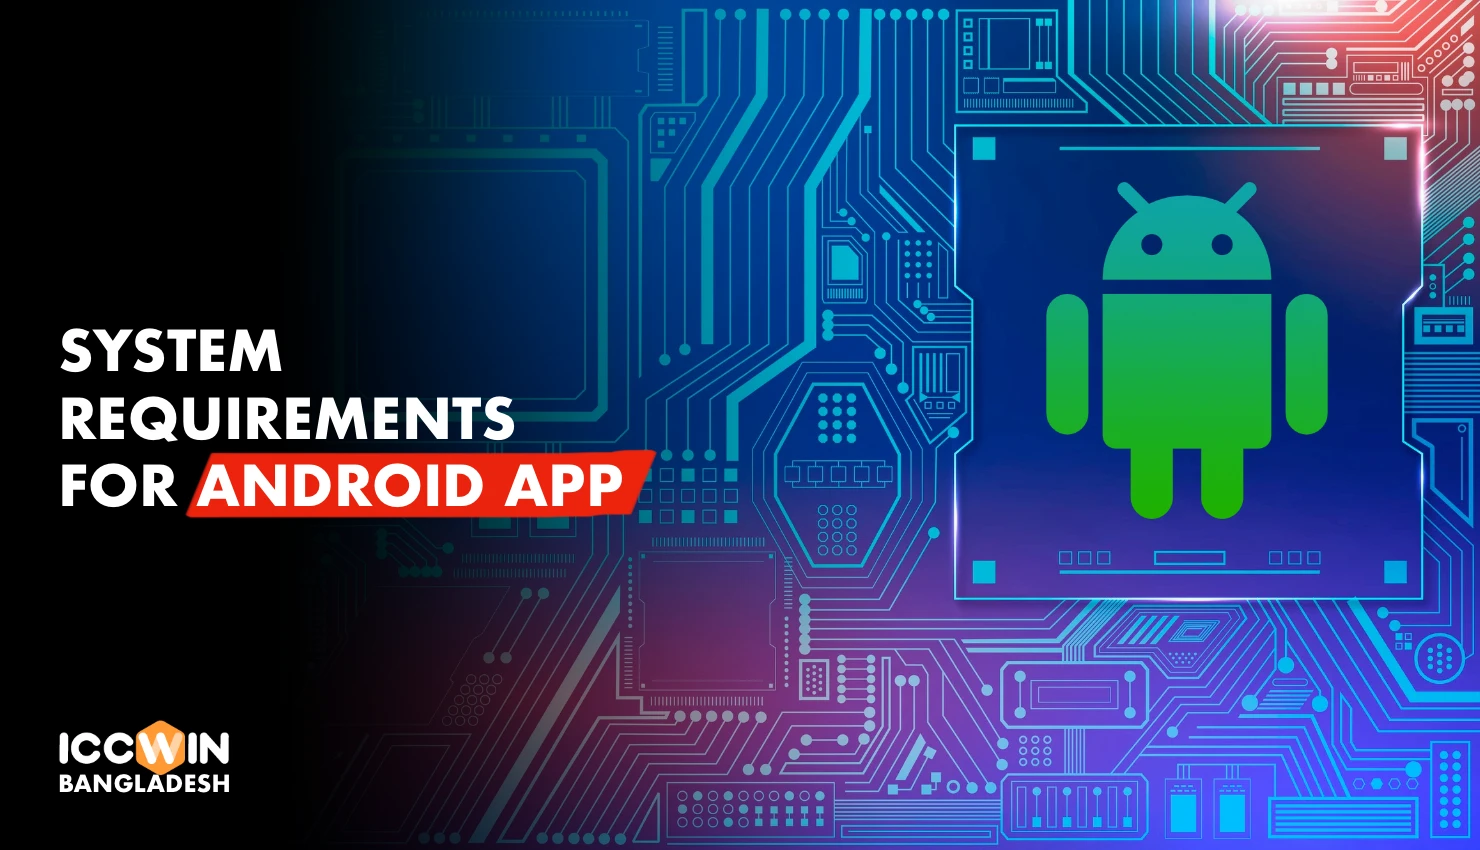 Icc Win Android অ্যাপের জন্য প্রধান সিস্টেমের প্রয়োজনীয়তা